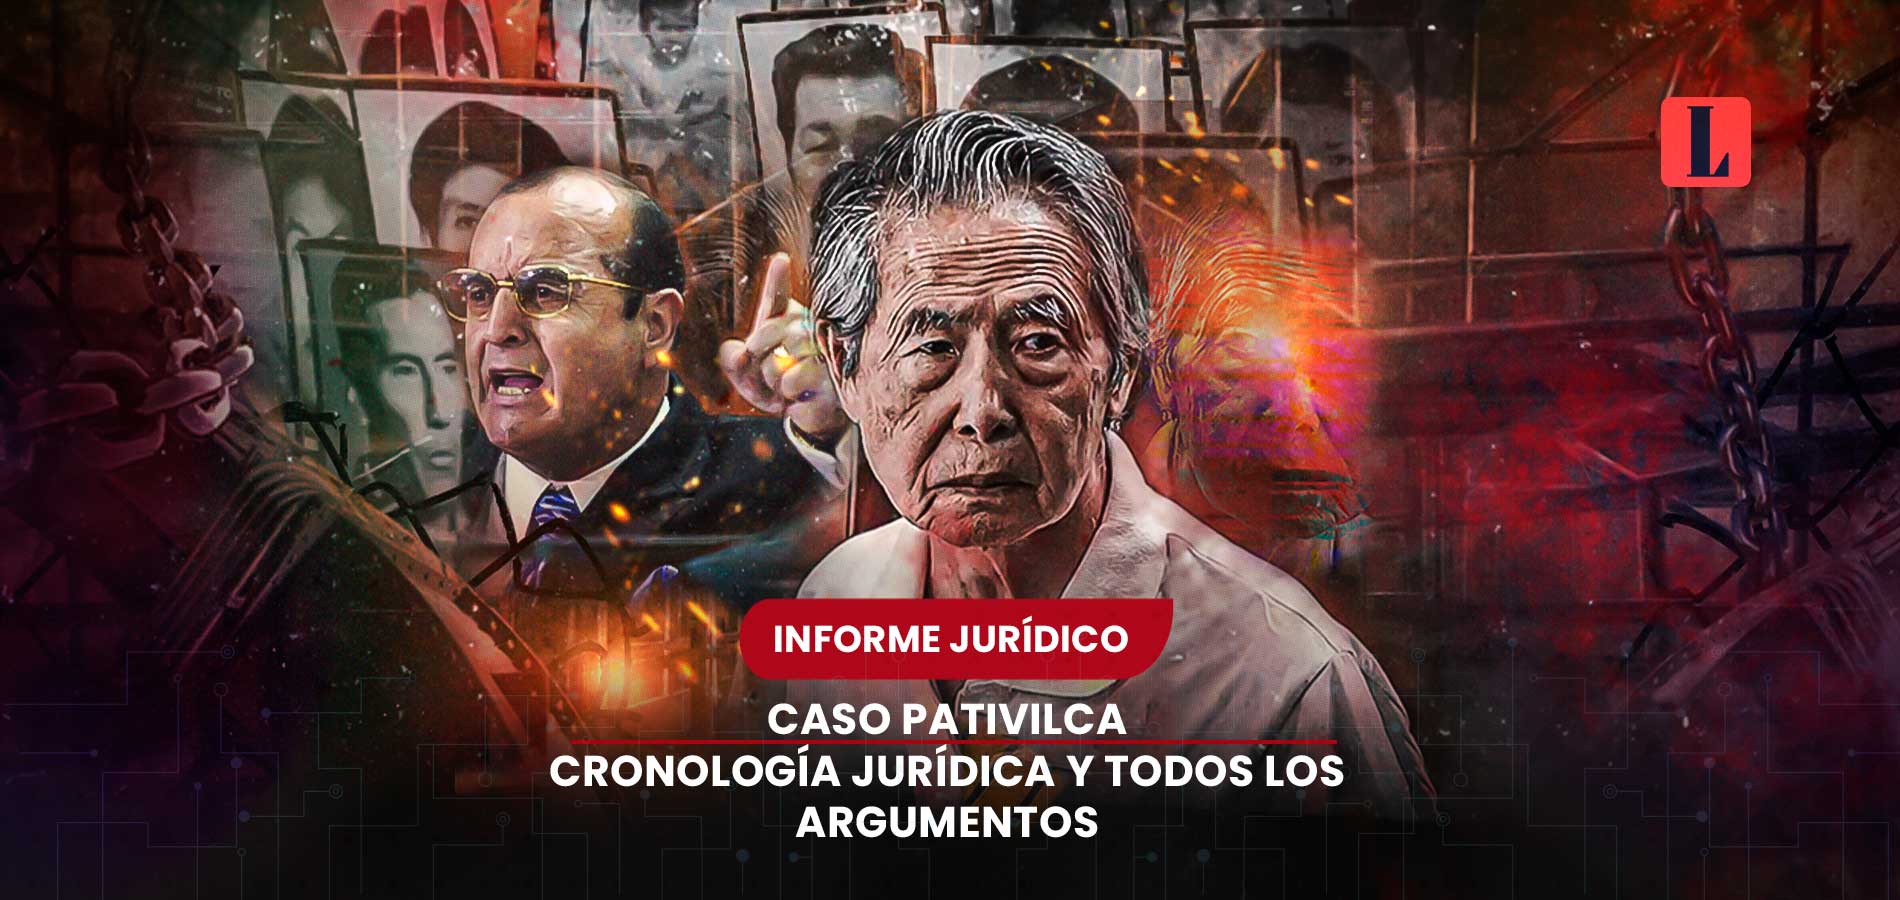 Cronología jurídica y argumentos del caso Pativilca: juicio oral inicia 18 de diciembre (Alberto Fujimori)